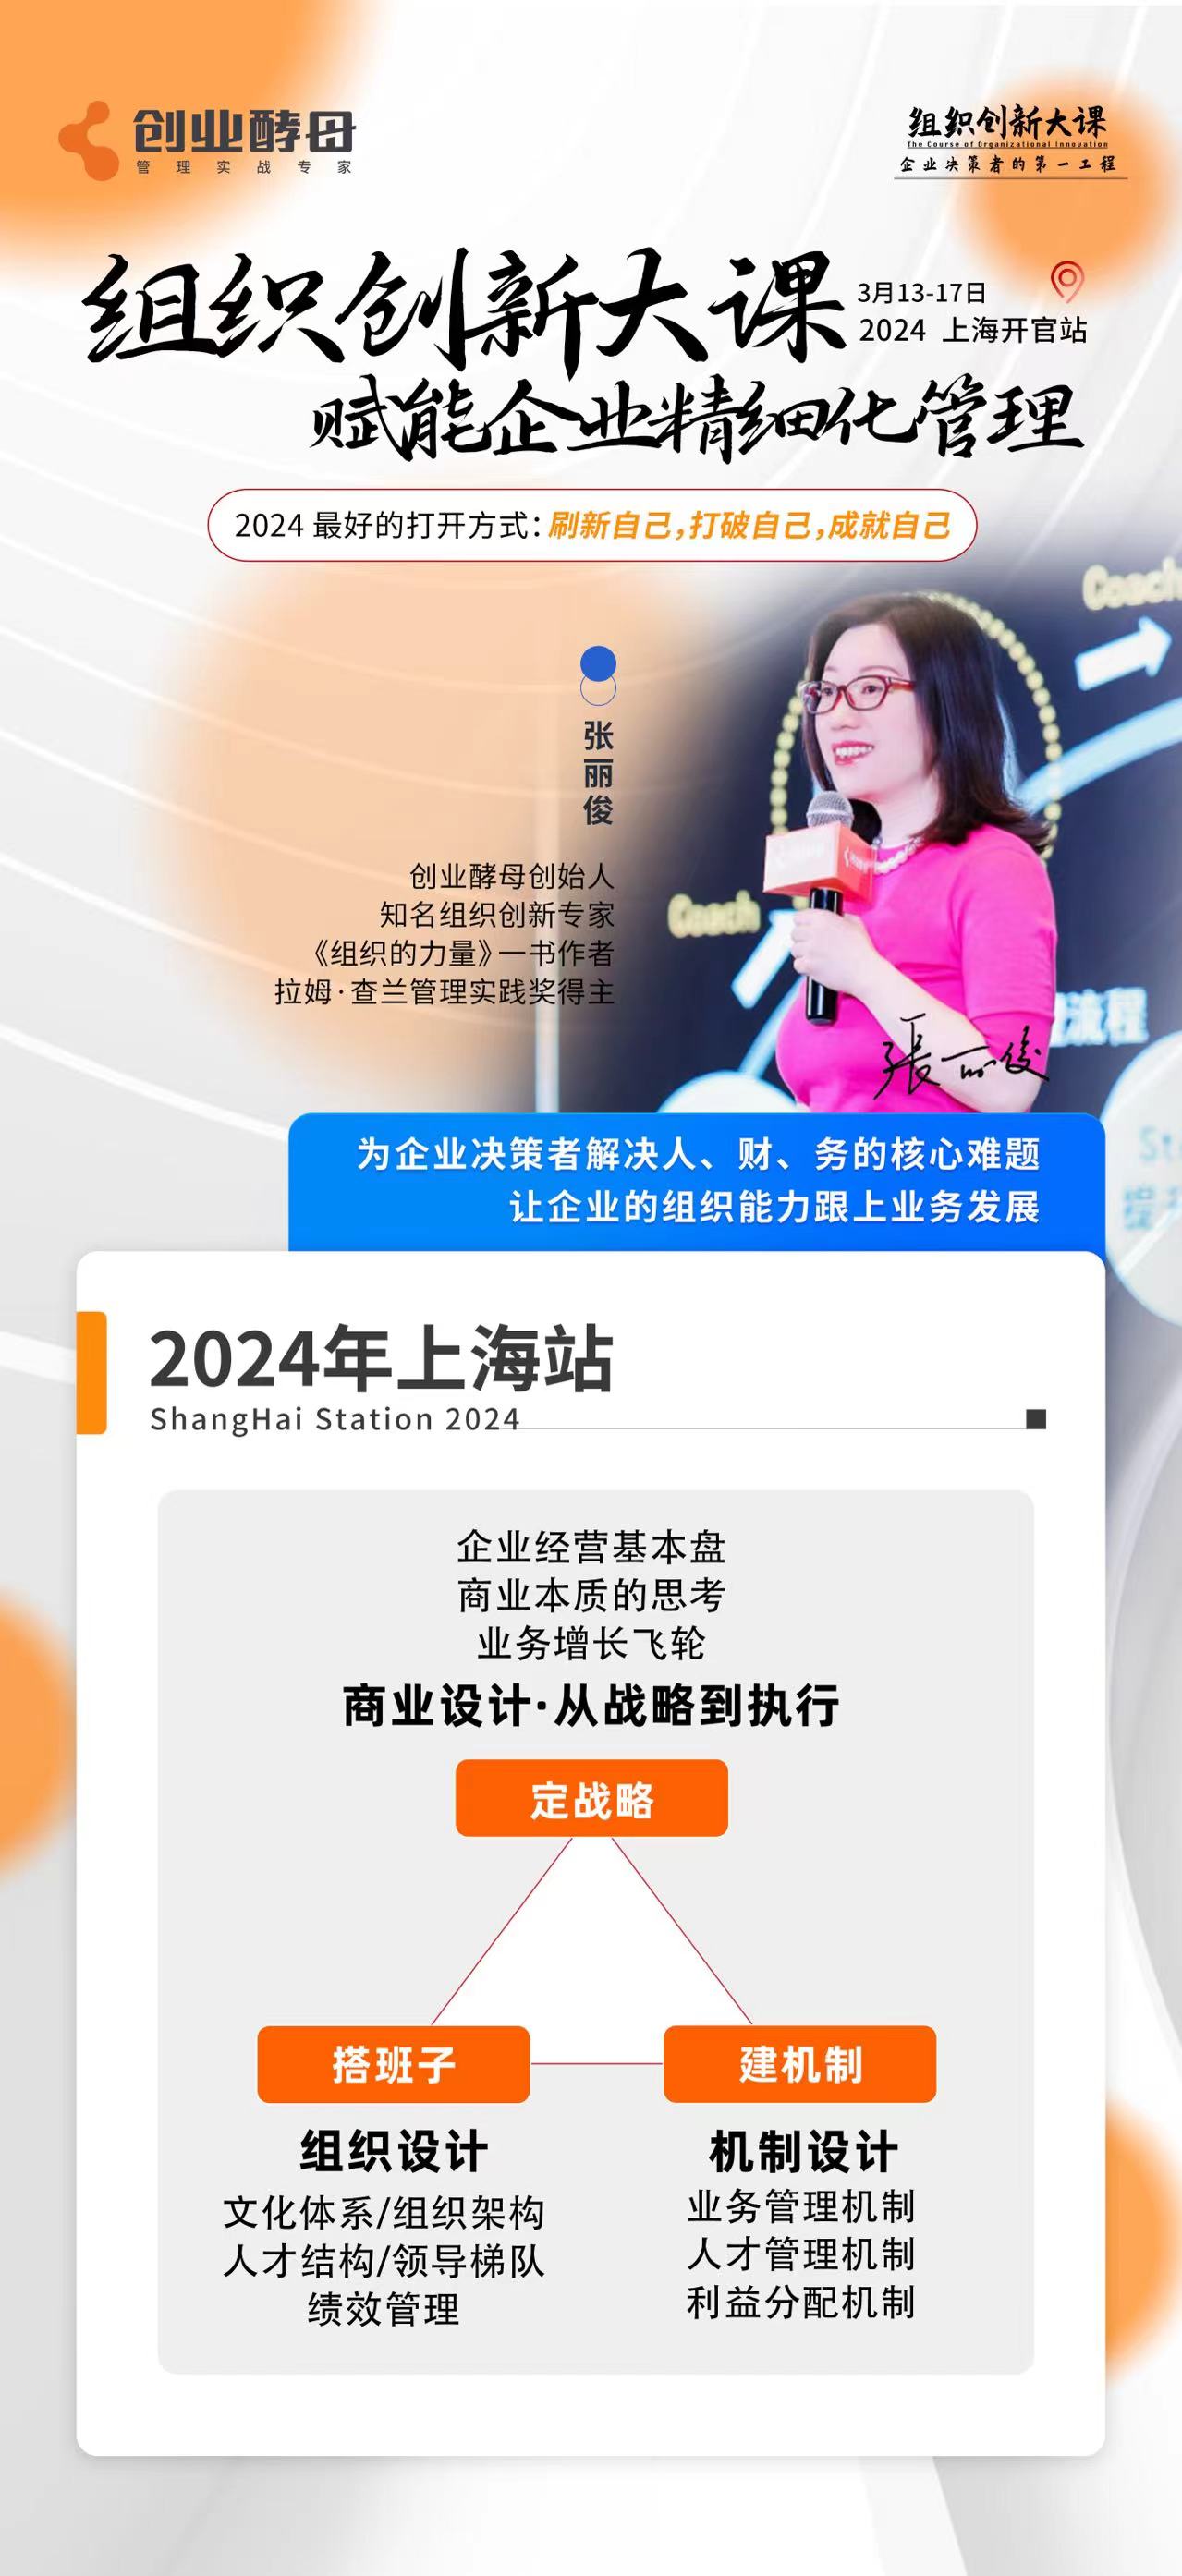 2024年3月创业酵母组织创新大课上海班课程安排_张丽俊